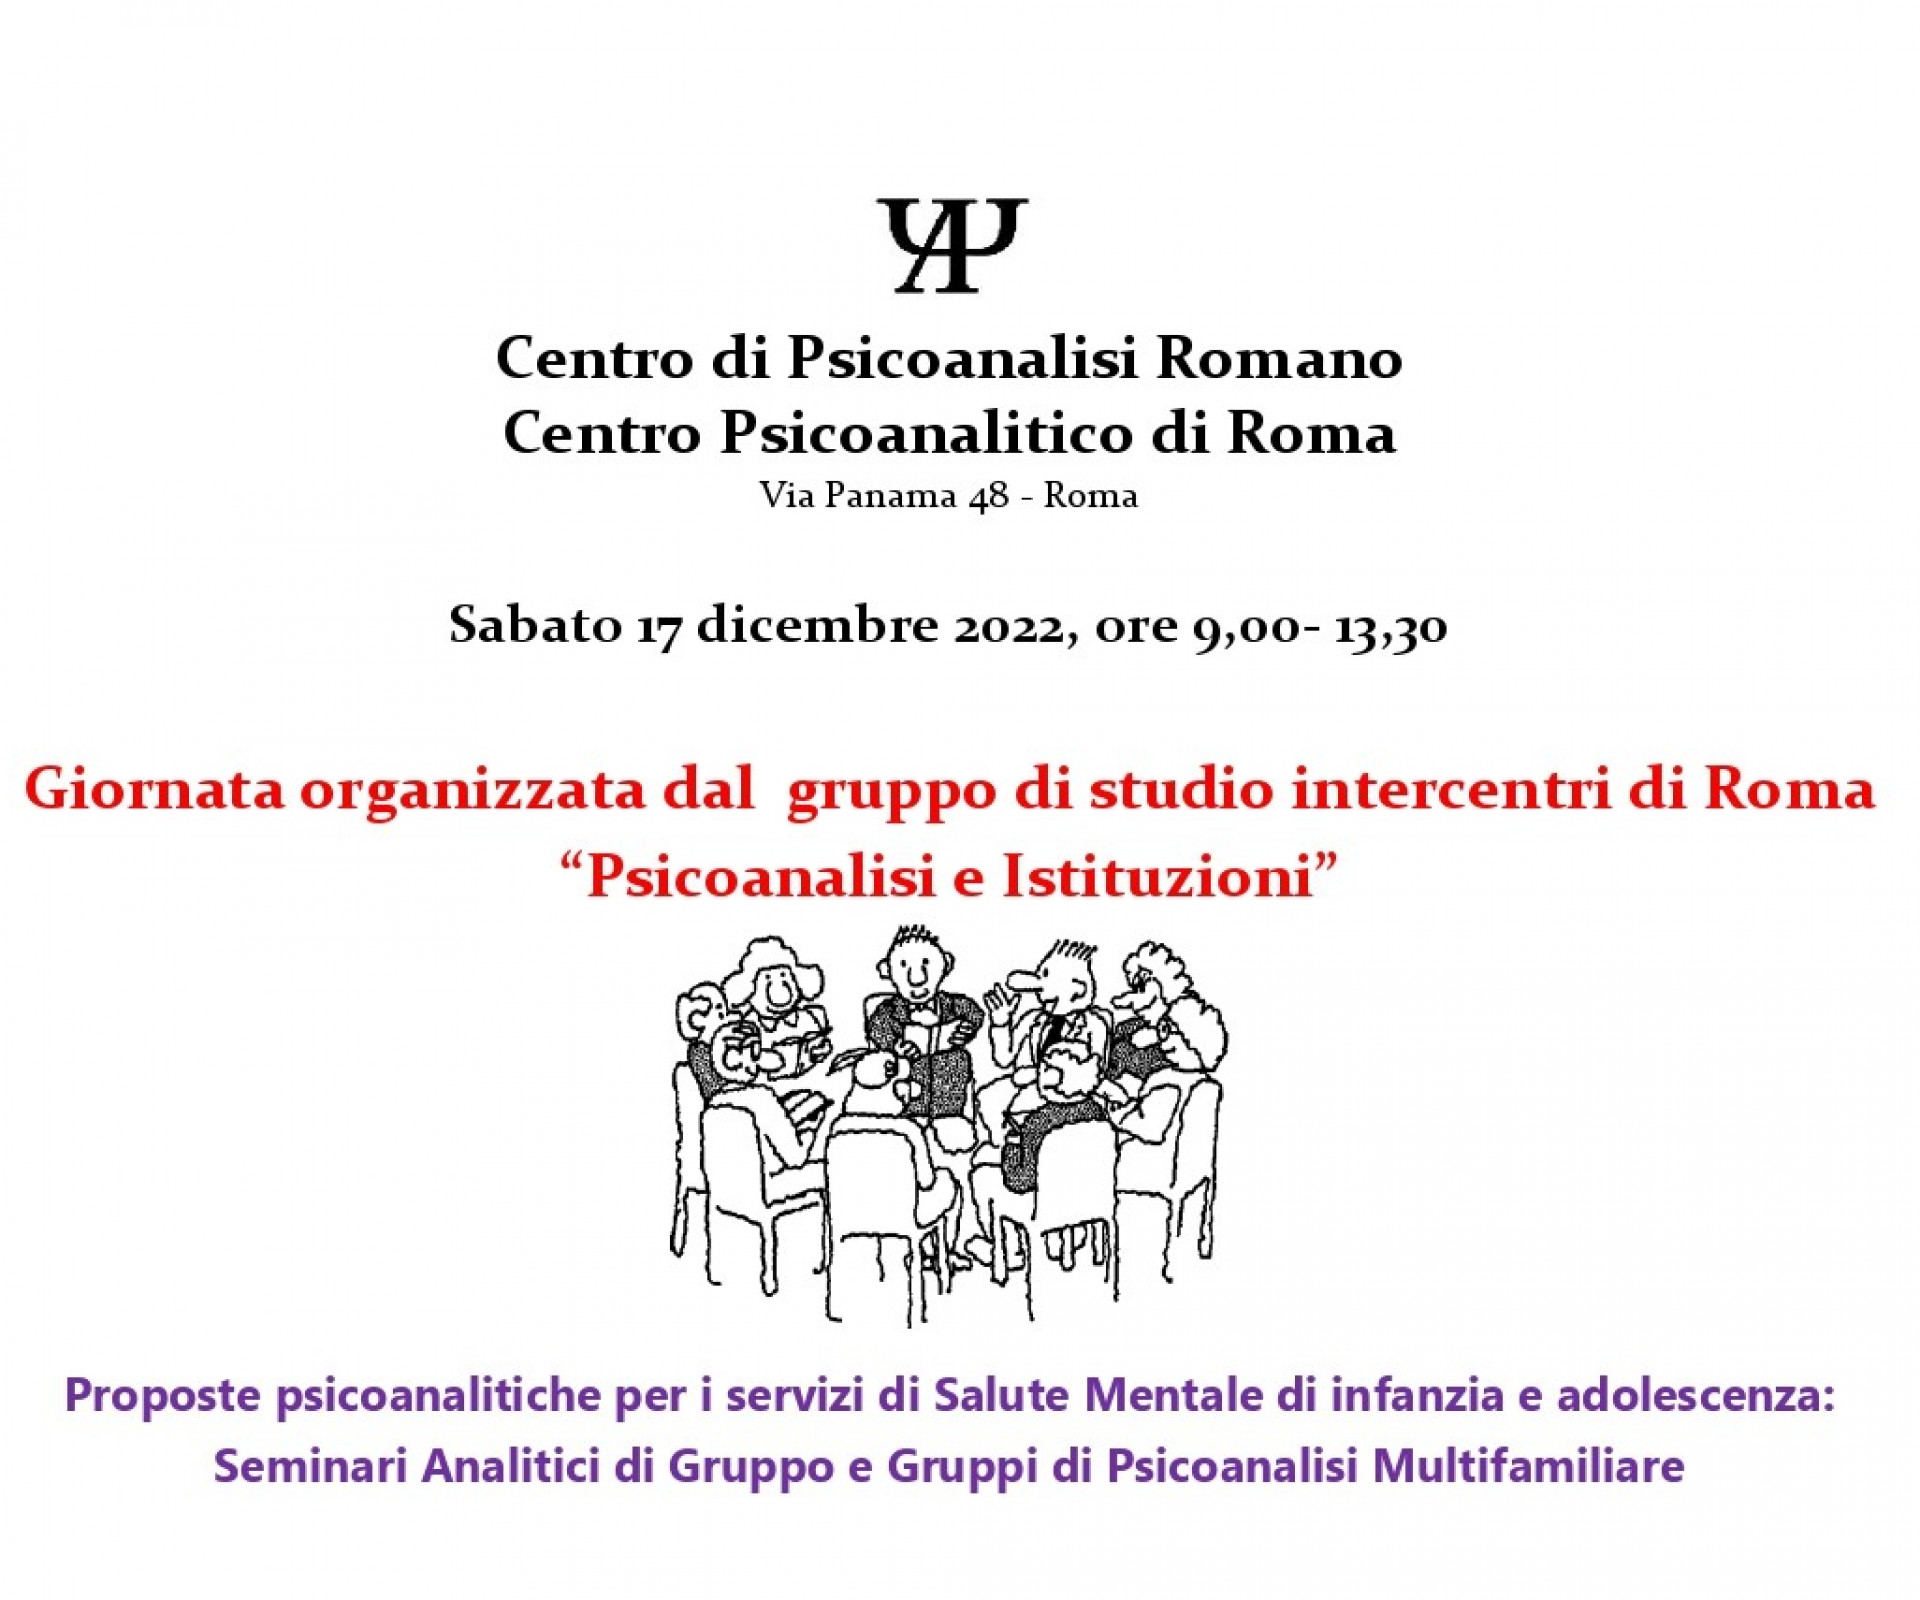 Giornata organizzata dal gruppo di studio Intercentri di Roma “Psicoanalisi e Istituzioni”